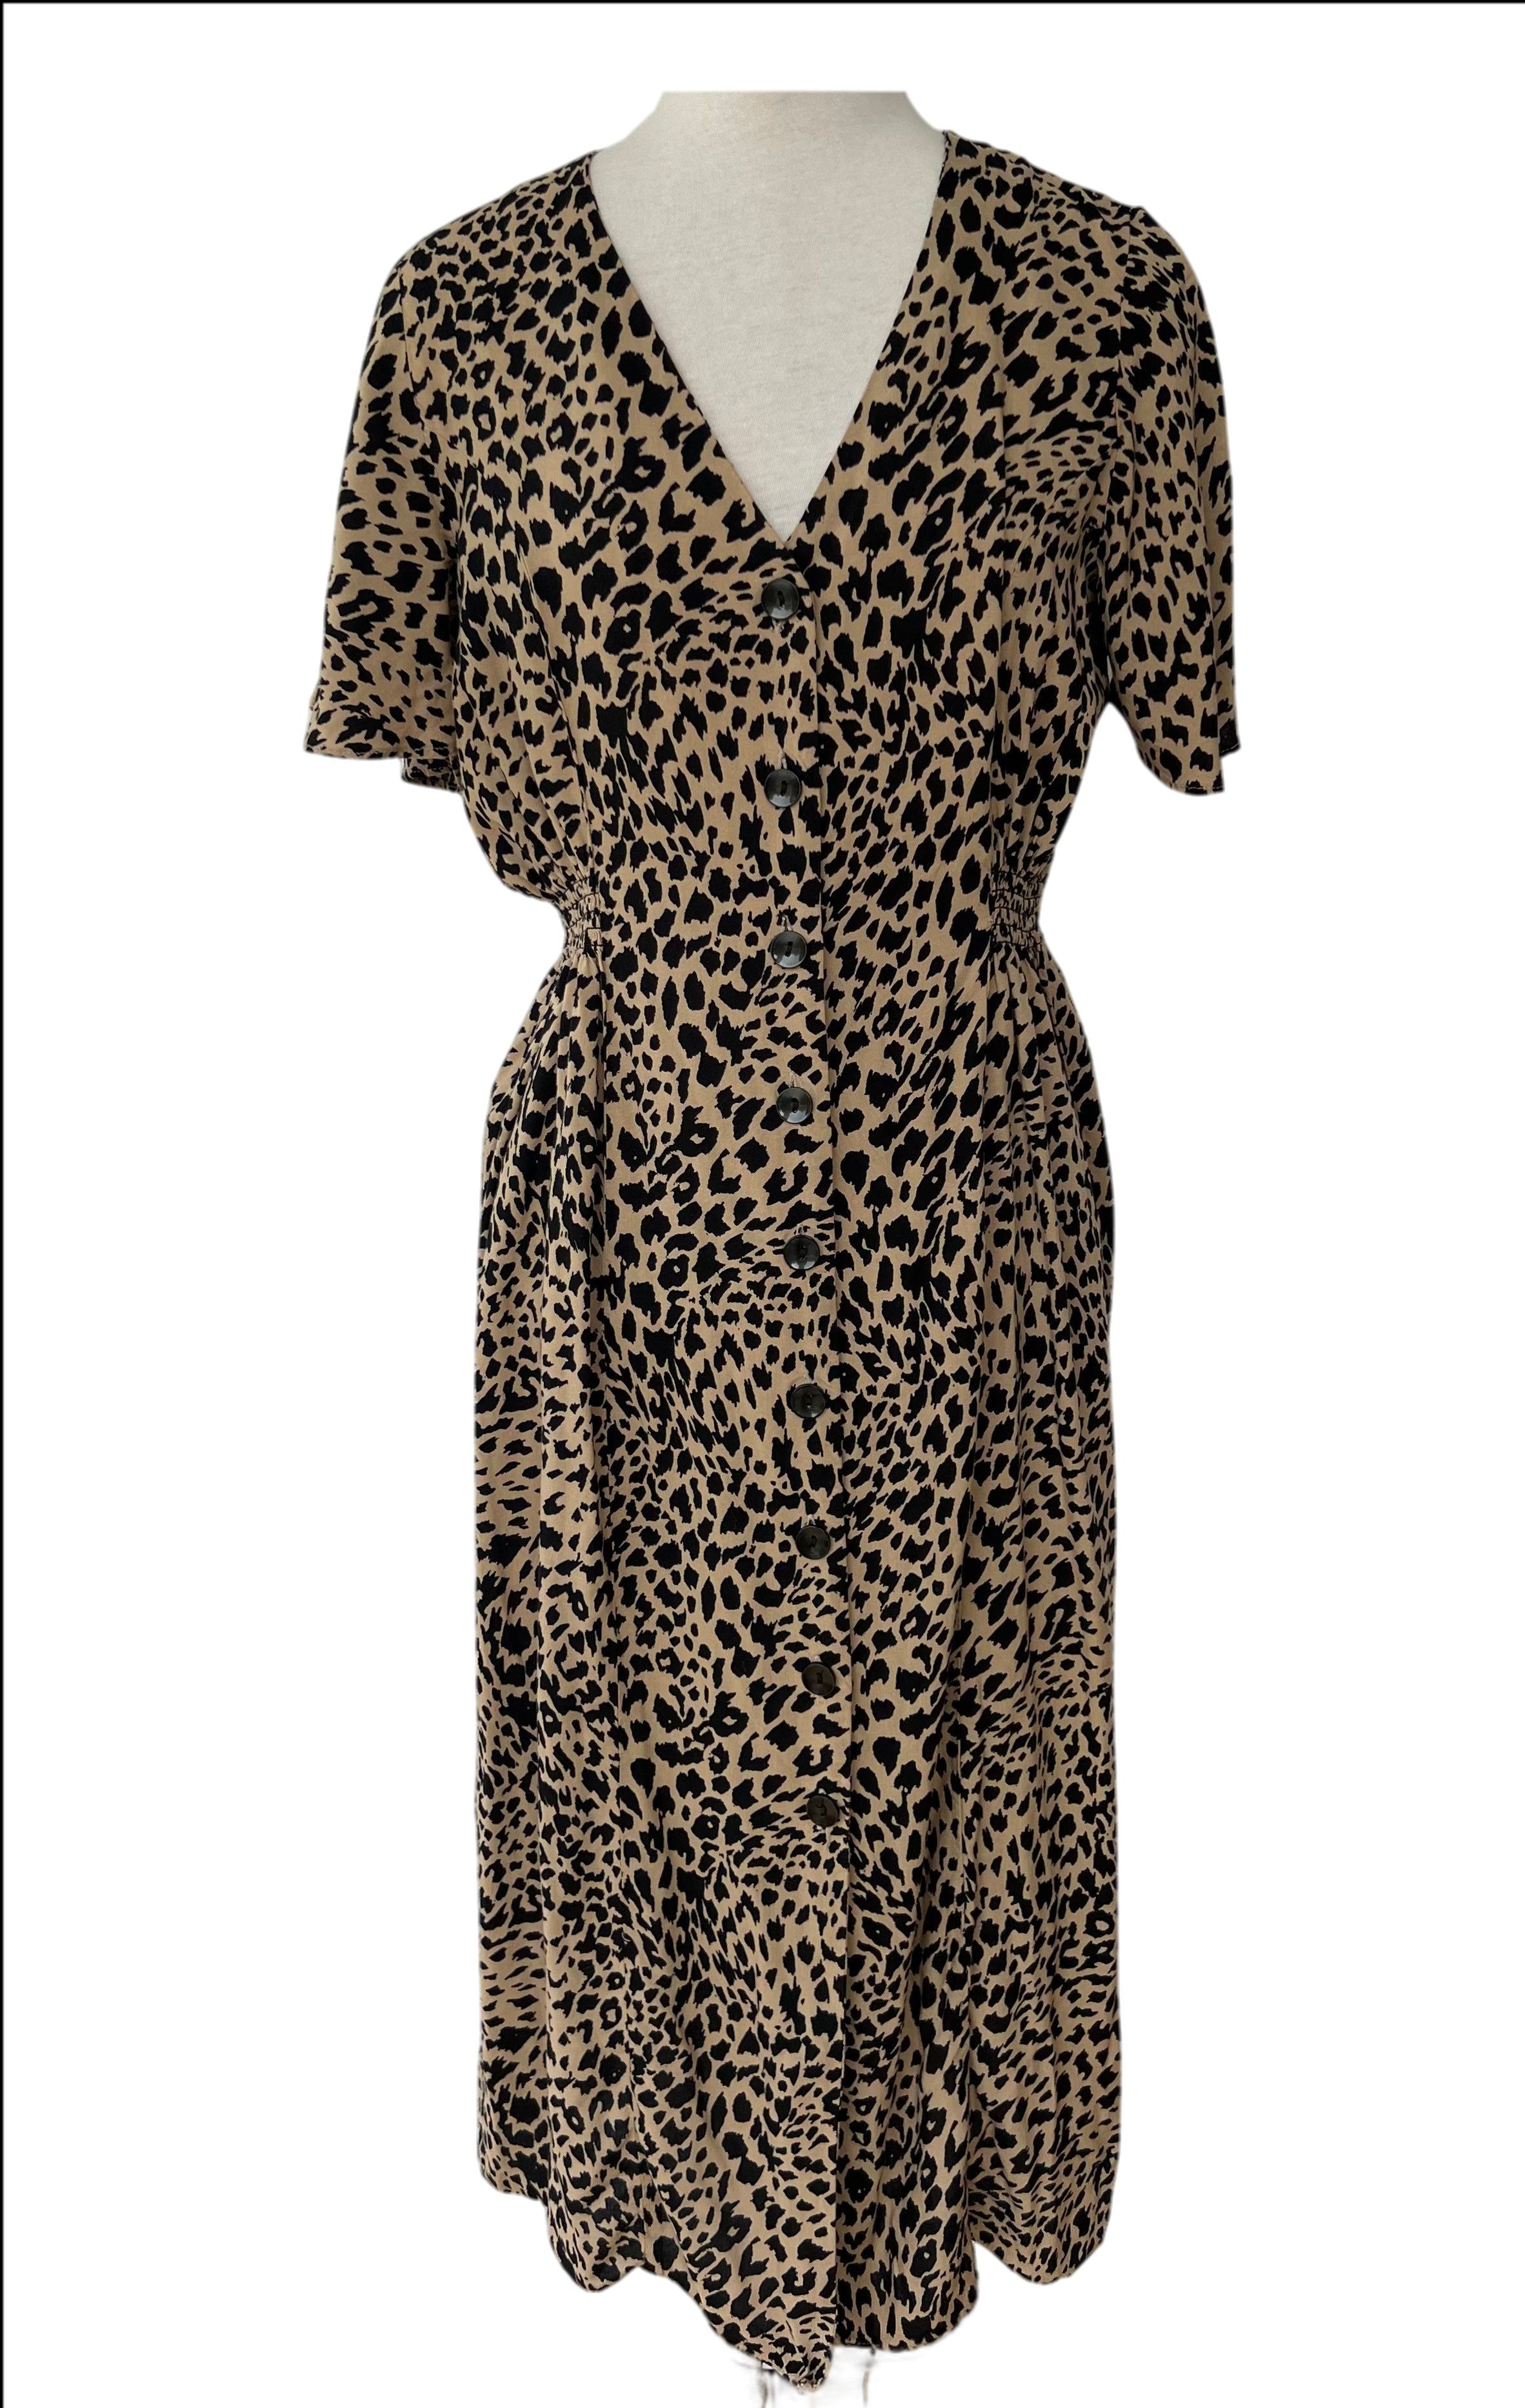 Button Front short sleeve long leopard print dress